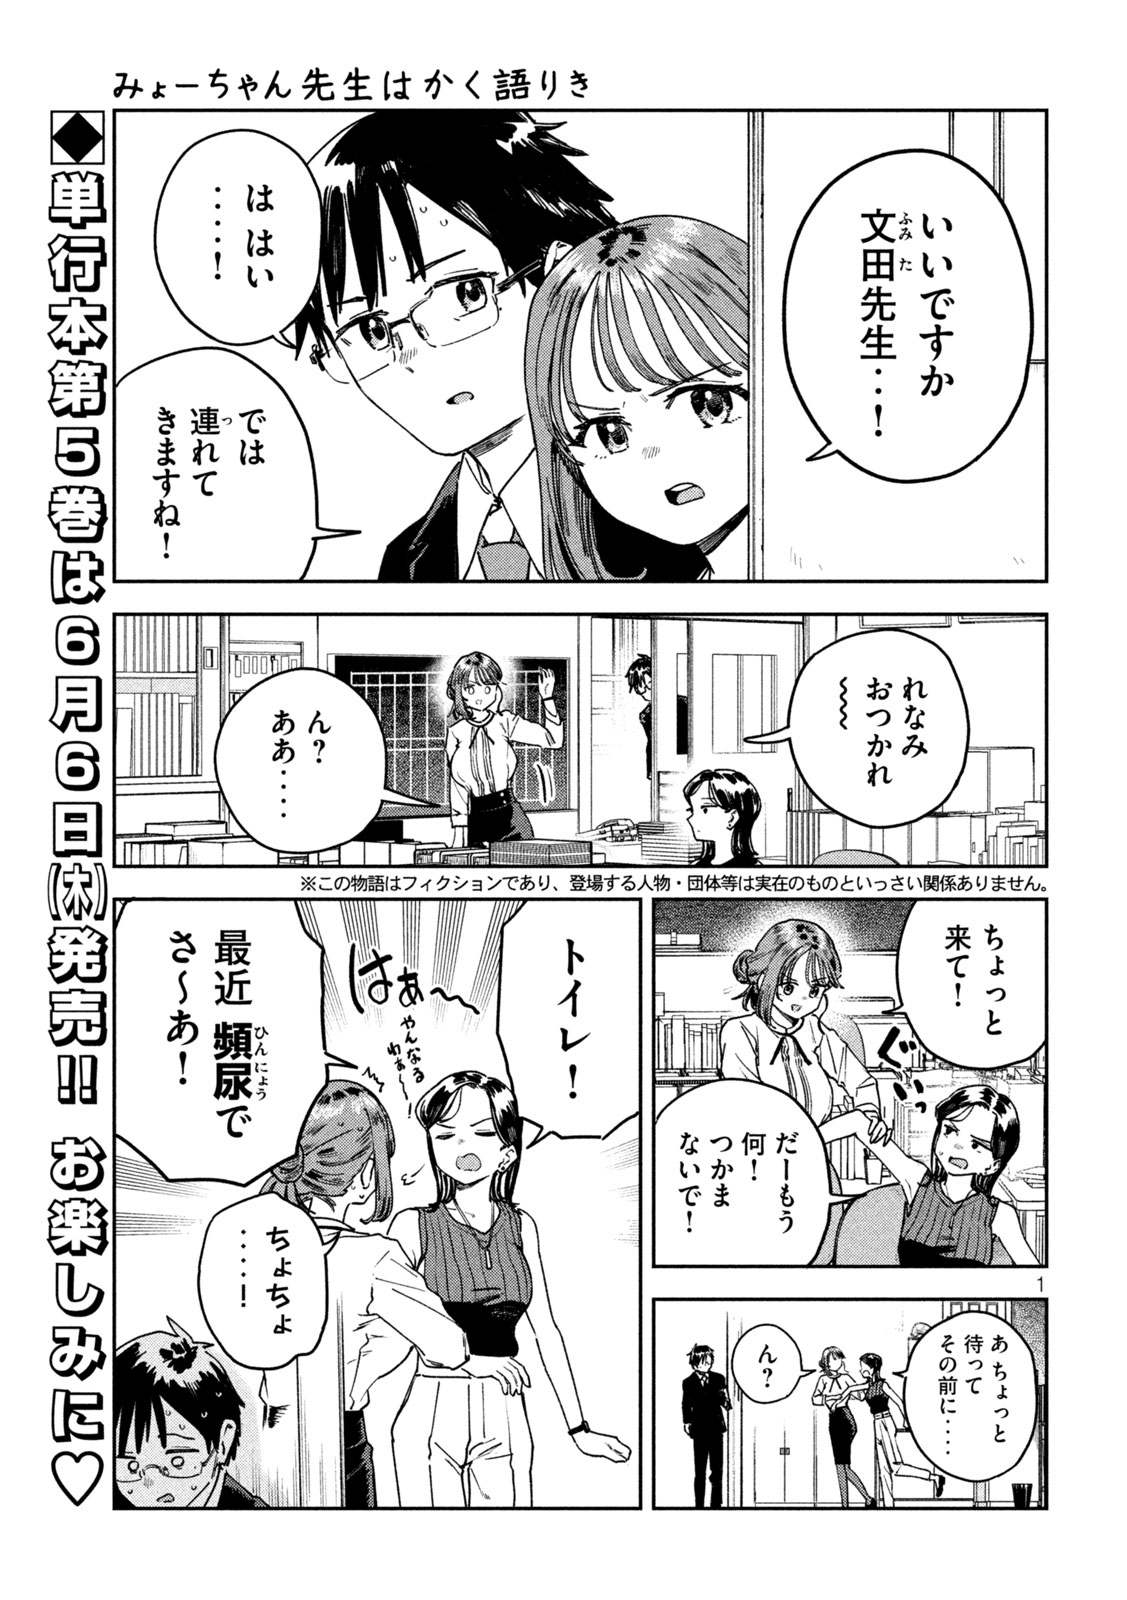 Myo-chan Sensei wa Kaku Katariki - Chapter 51 - Page 1